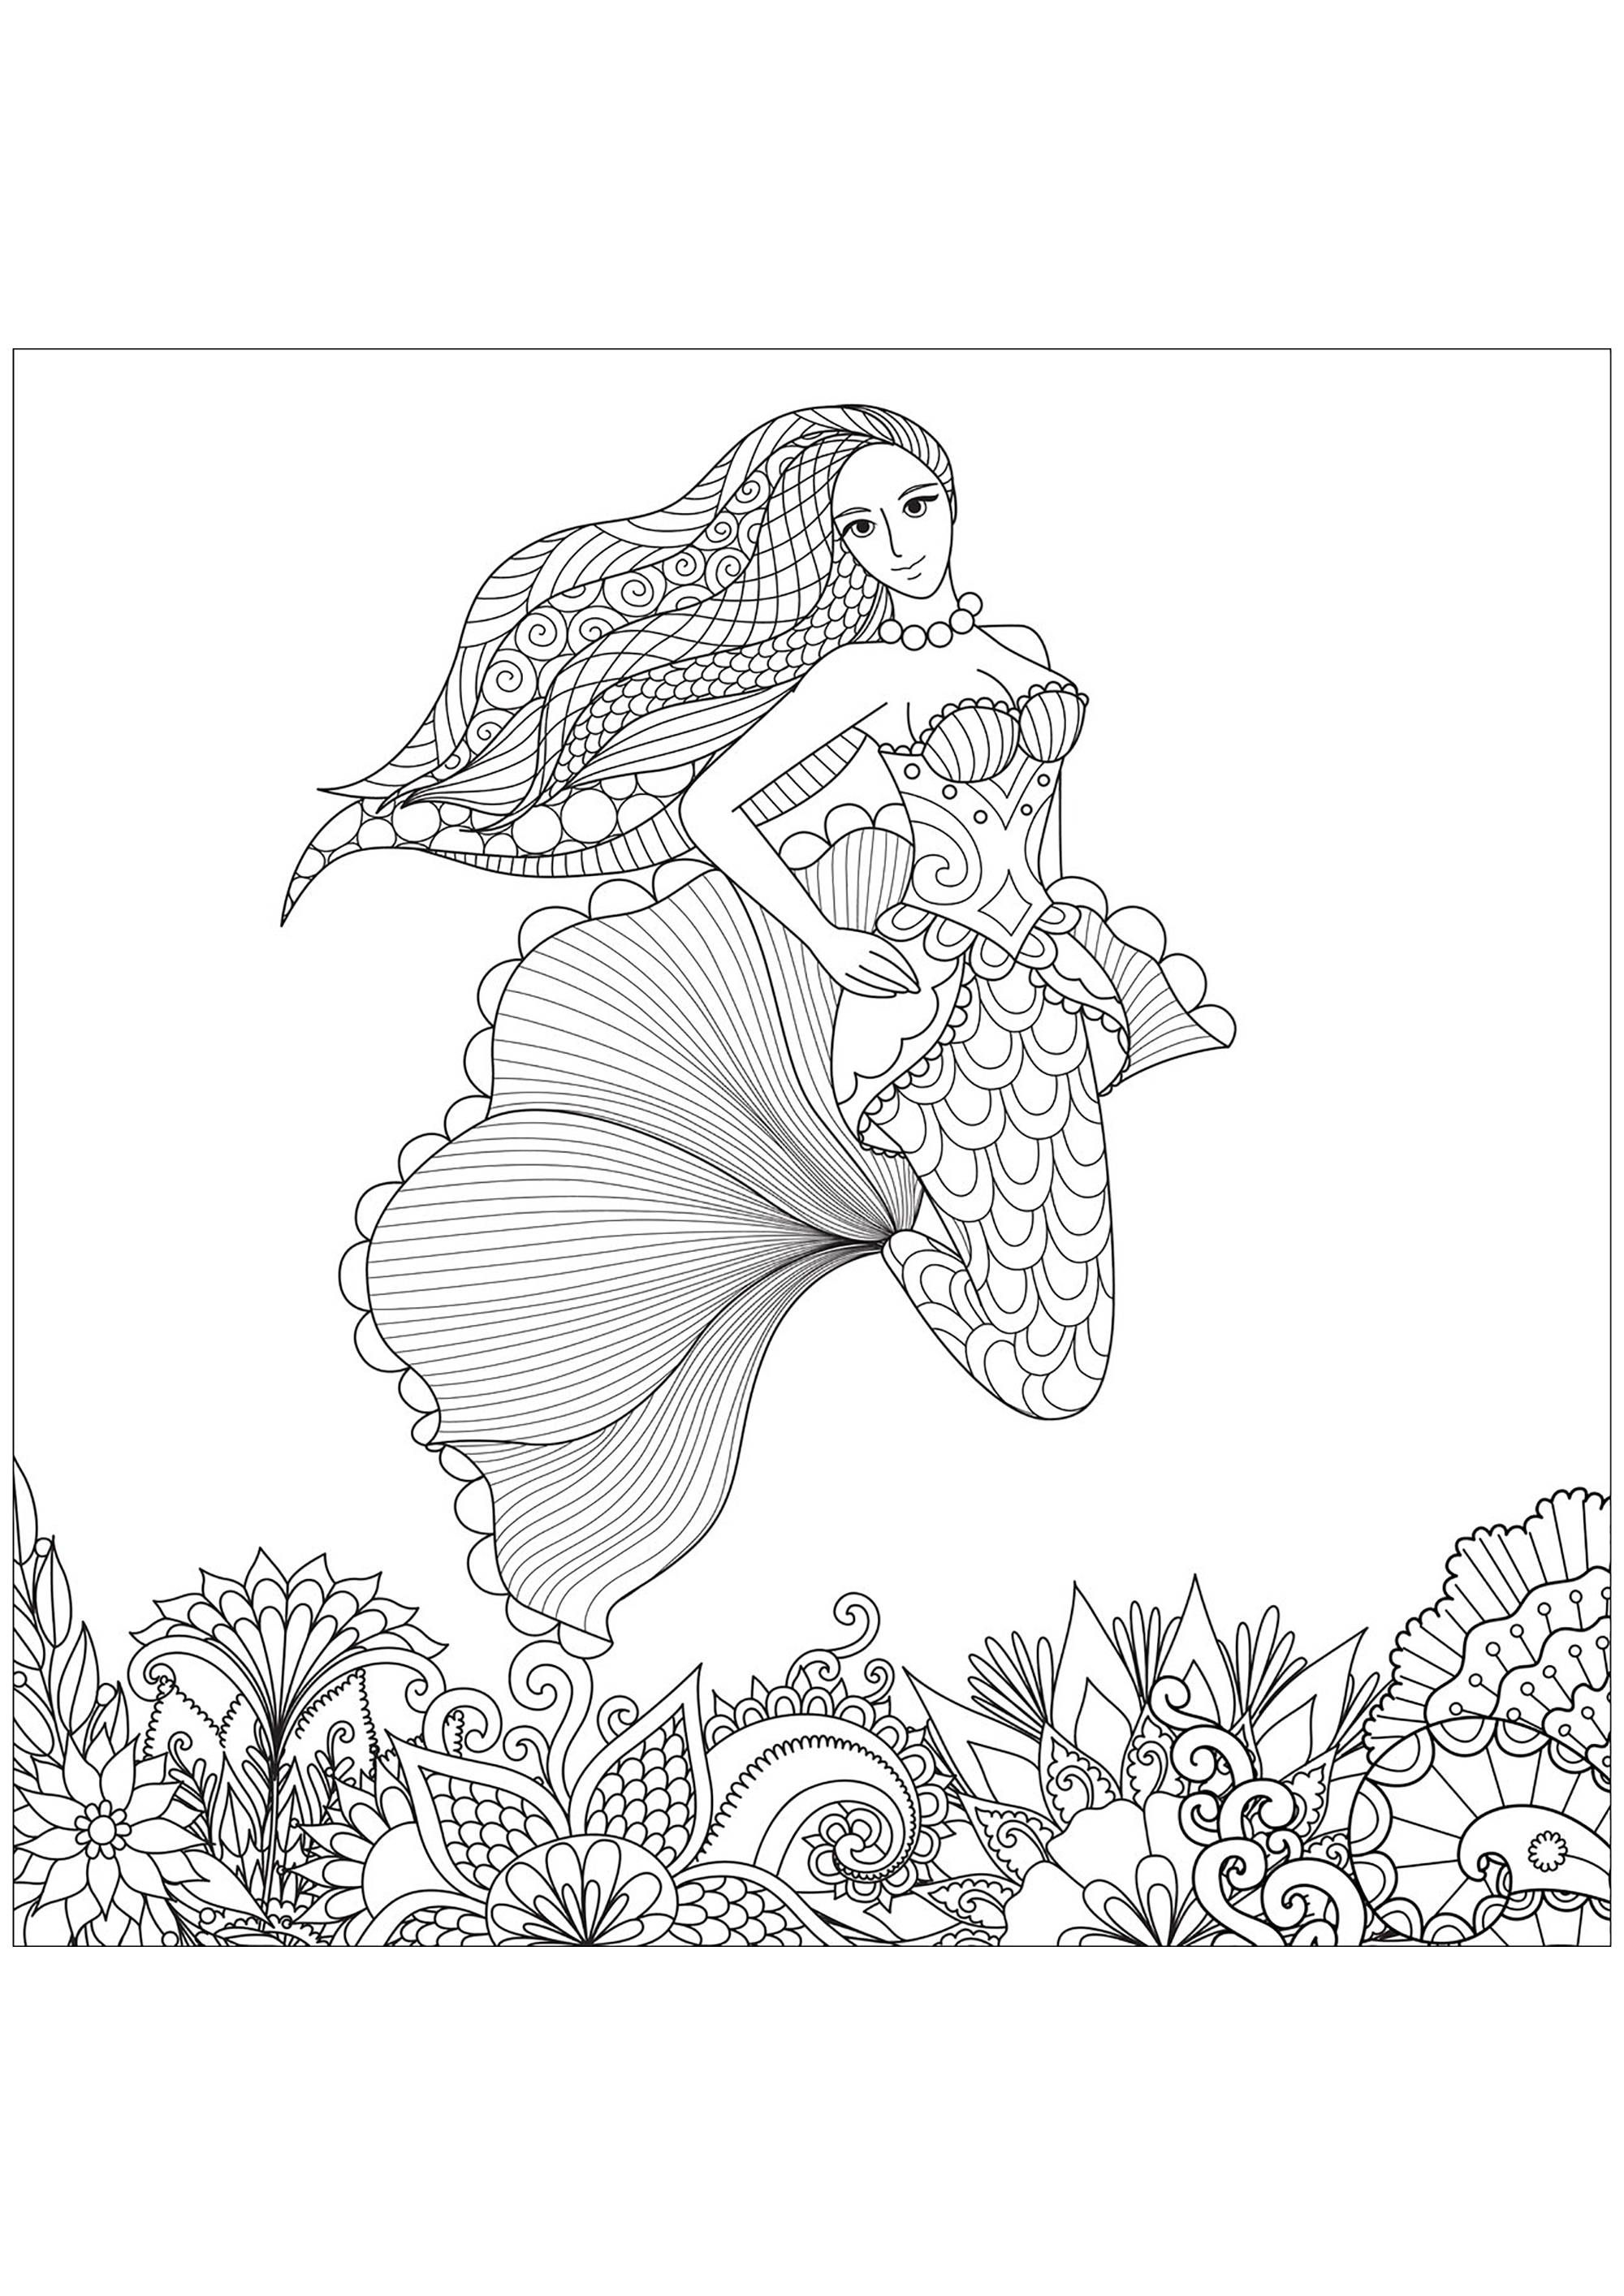 Bonita sirena con bonitos motivos en el pelo y fondo marino dibujado con Zentangles, Origen : 123rf   Artista : Bimdeedee